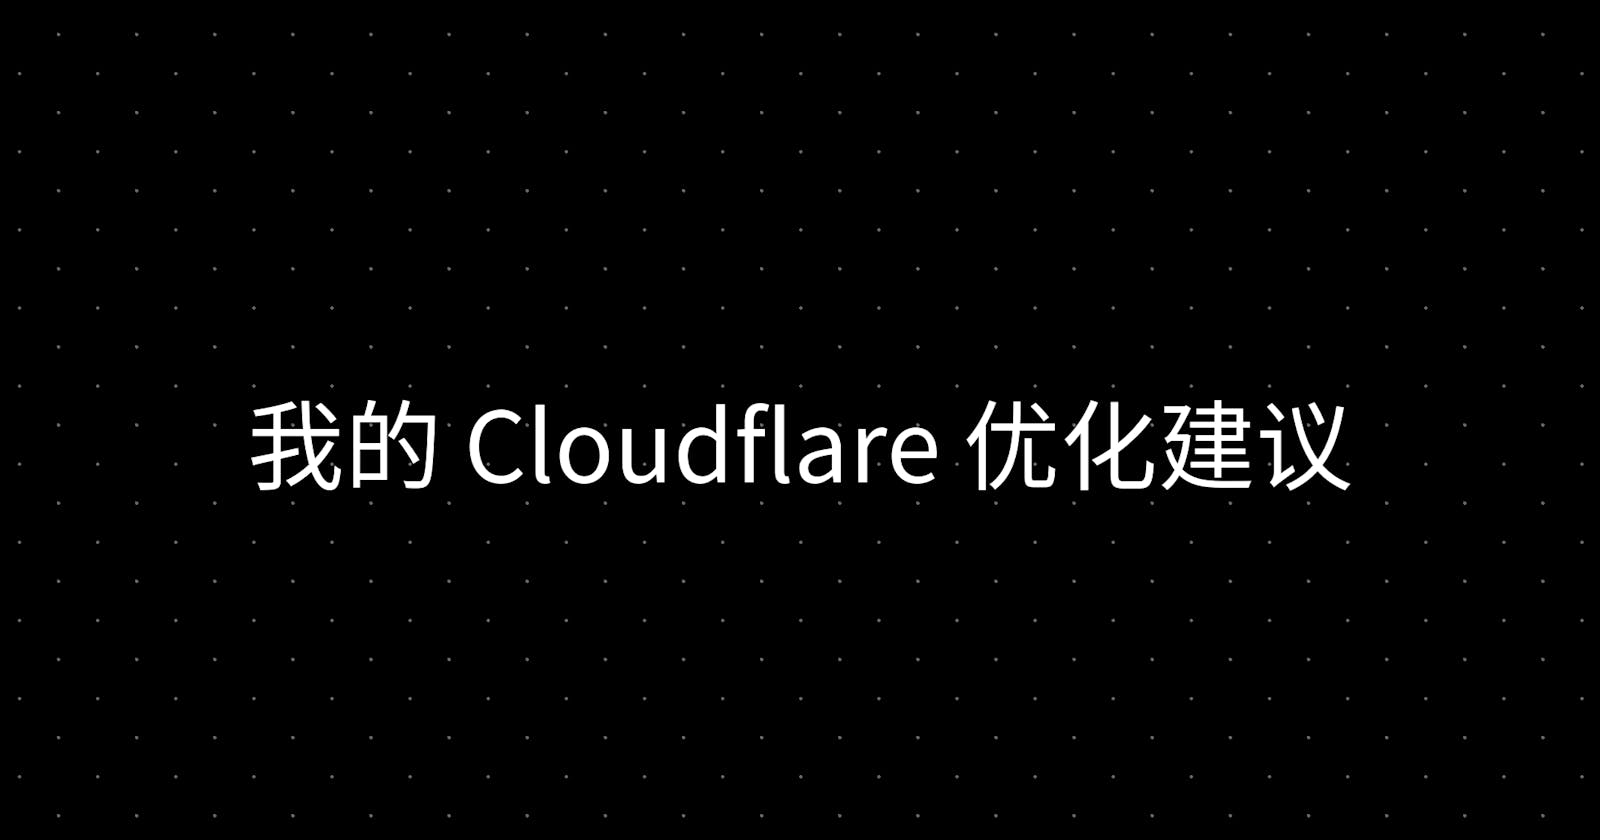 我的 Cloudflare 优化建议